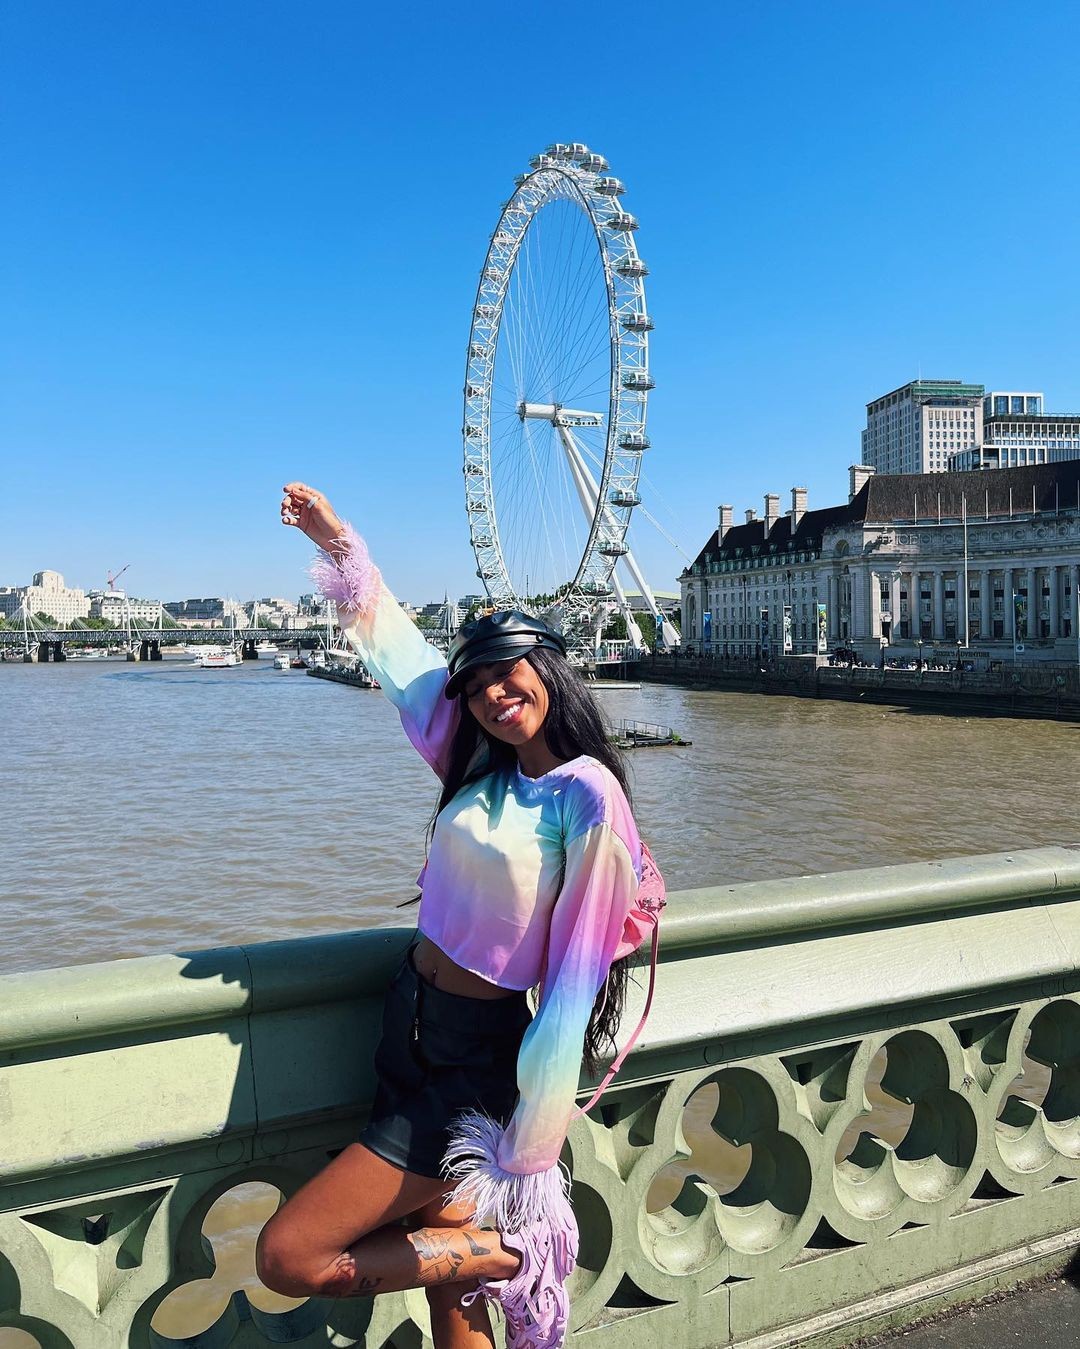 Dhiovanna posa às margens do rio Tâmisa, com a roda gigante London Eye ao fundo (Foto: Reprodução Instagram)